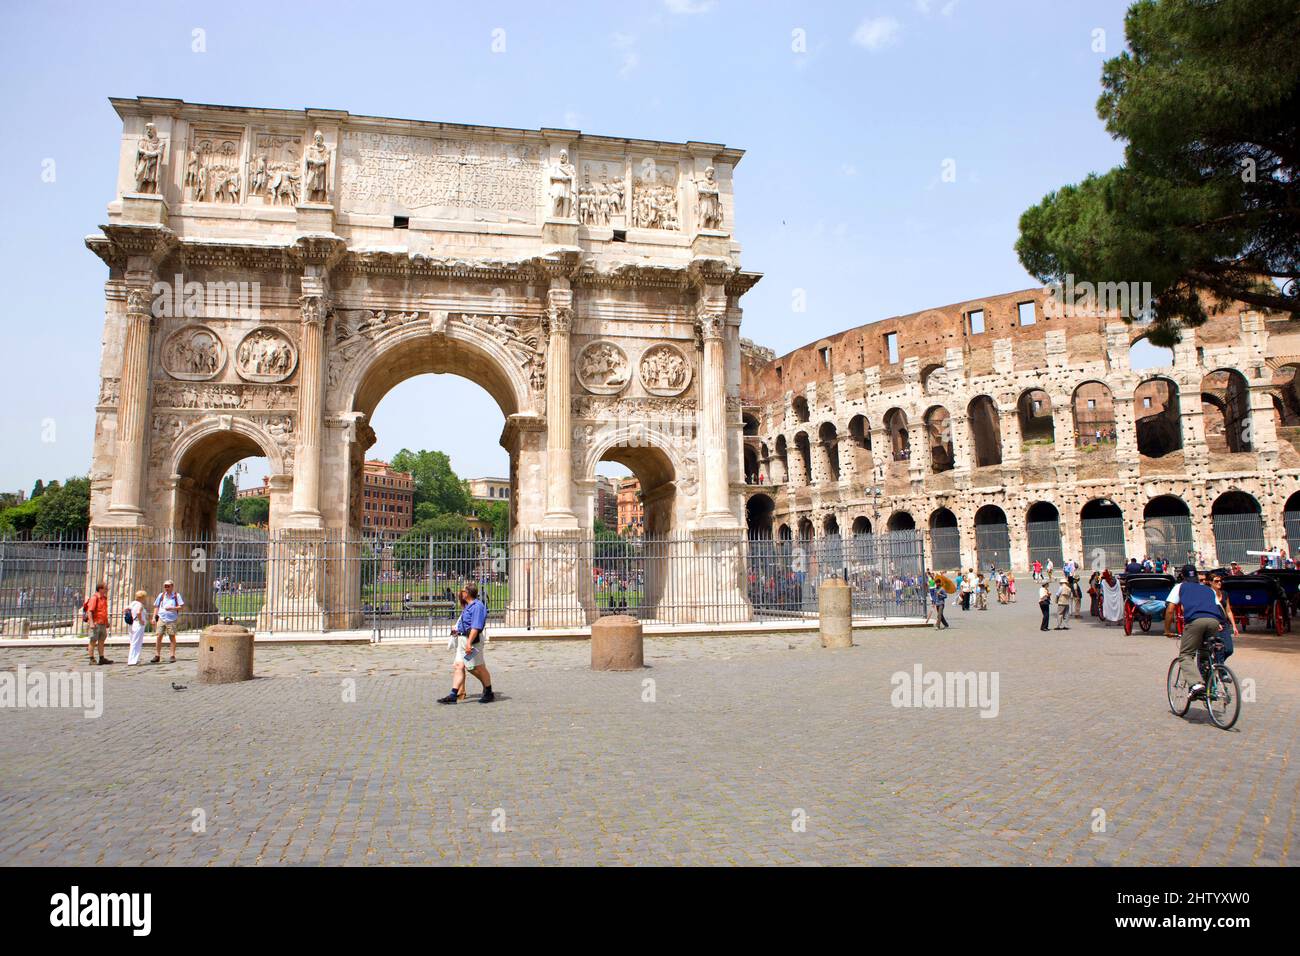 Arco di Costantino, Rome, Lazio, Italy Stock Photo